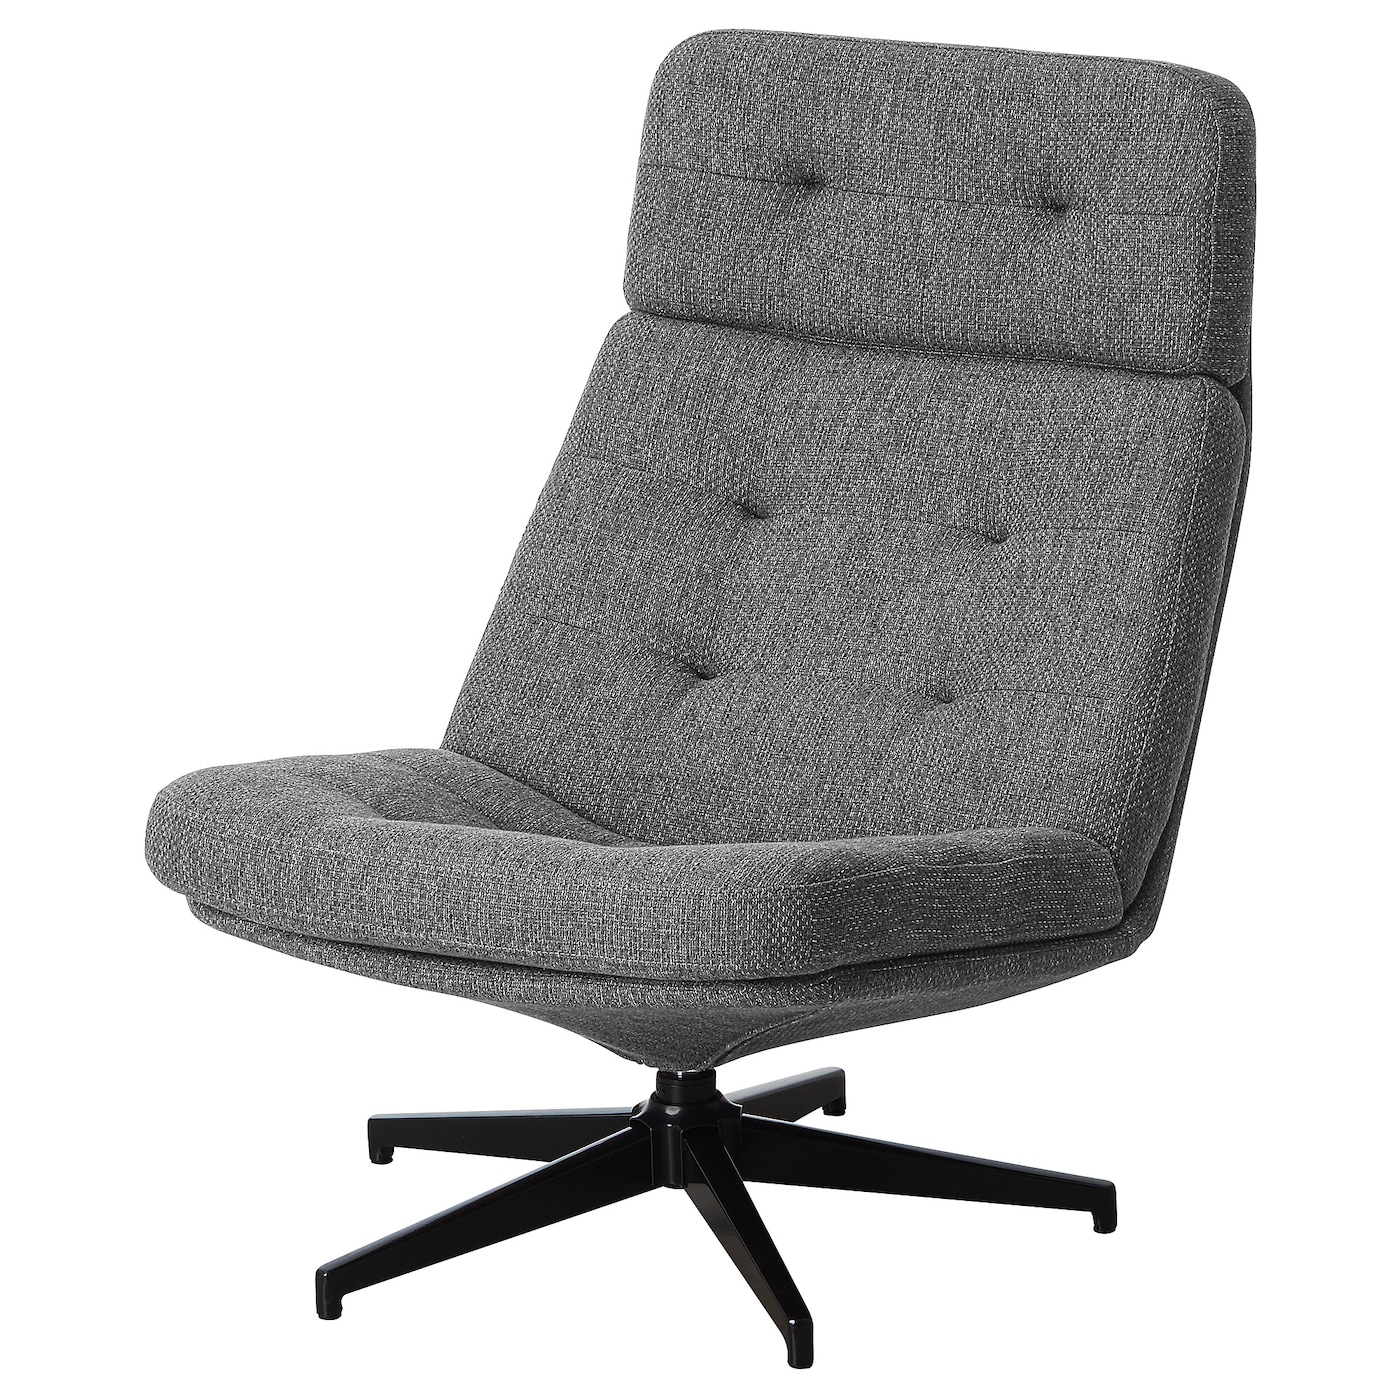 вращающееся кресло раскладное ХАВБЕРГ Вращающееся кресло, Лейде серый/черный HAVBERG IKEA